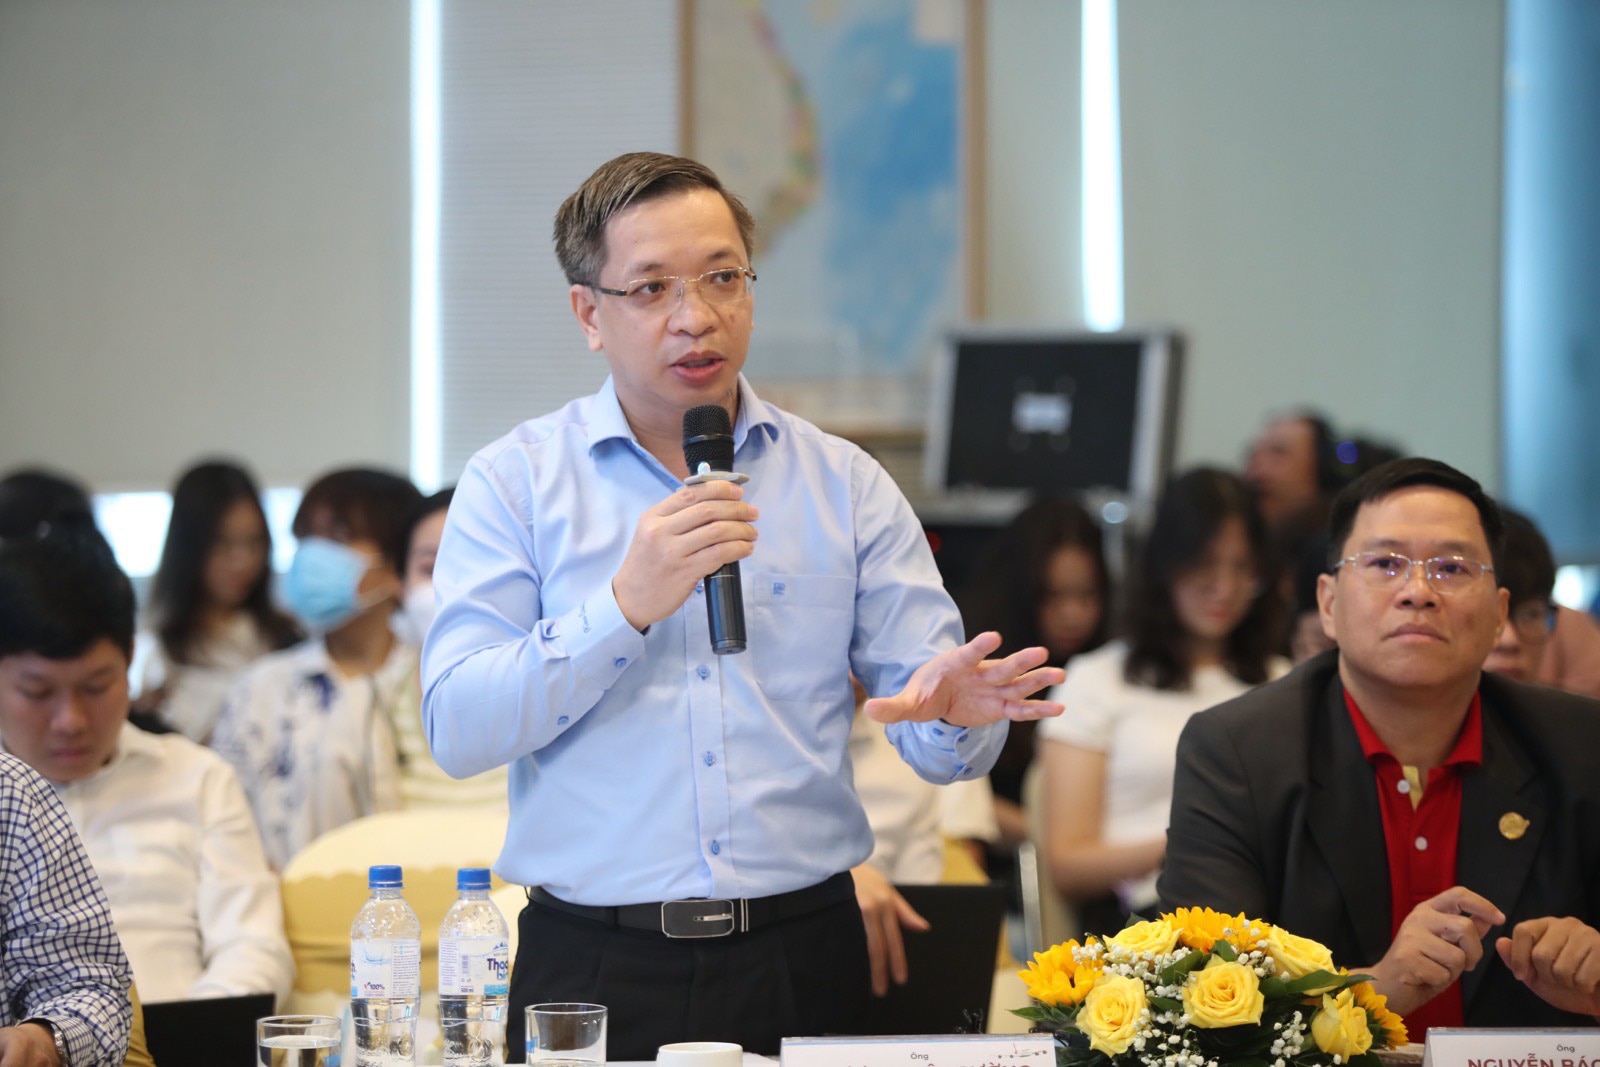 Ông Trương Việt Cường - phó tổng giám đốc Bamboo Airways - phân tích nguyên nhân tăng giá vé và đề xuất giảm chi phí để "hạ nhiệt" giá vé trong thời gian tới - Ảnh: T.N.